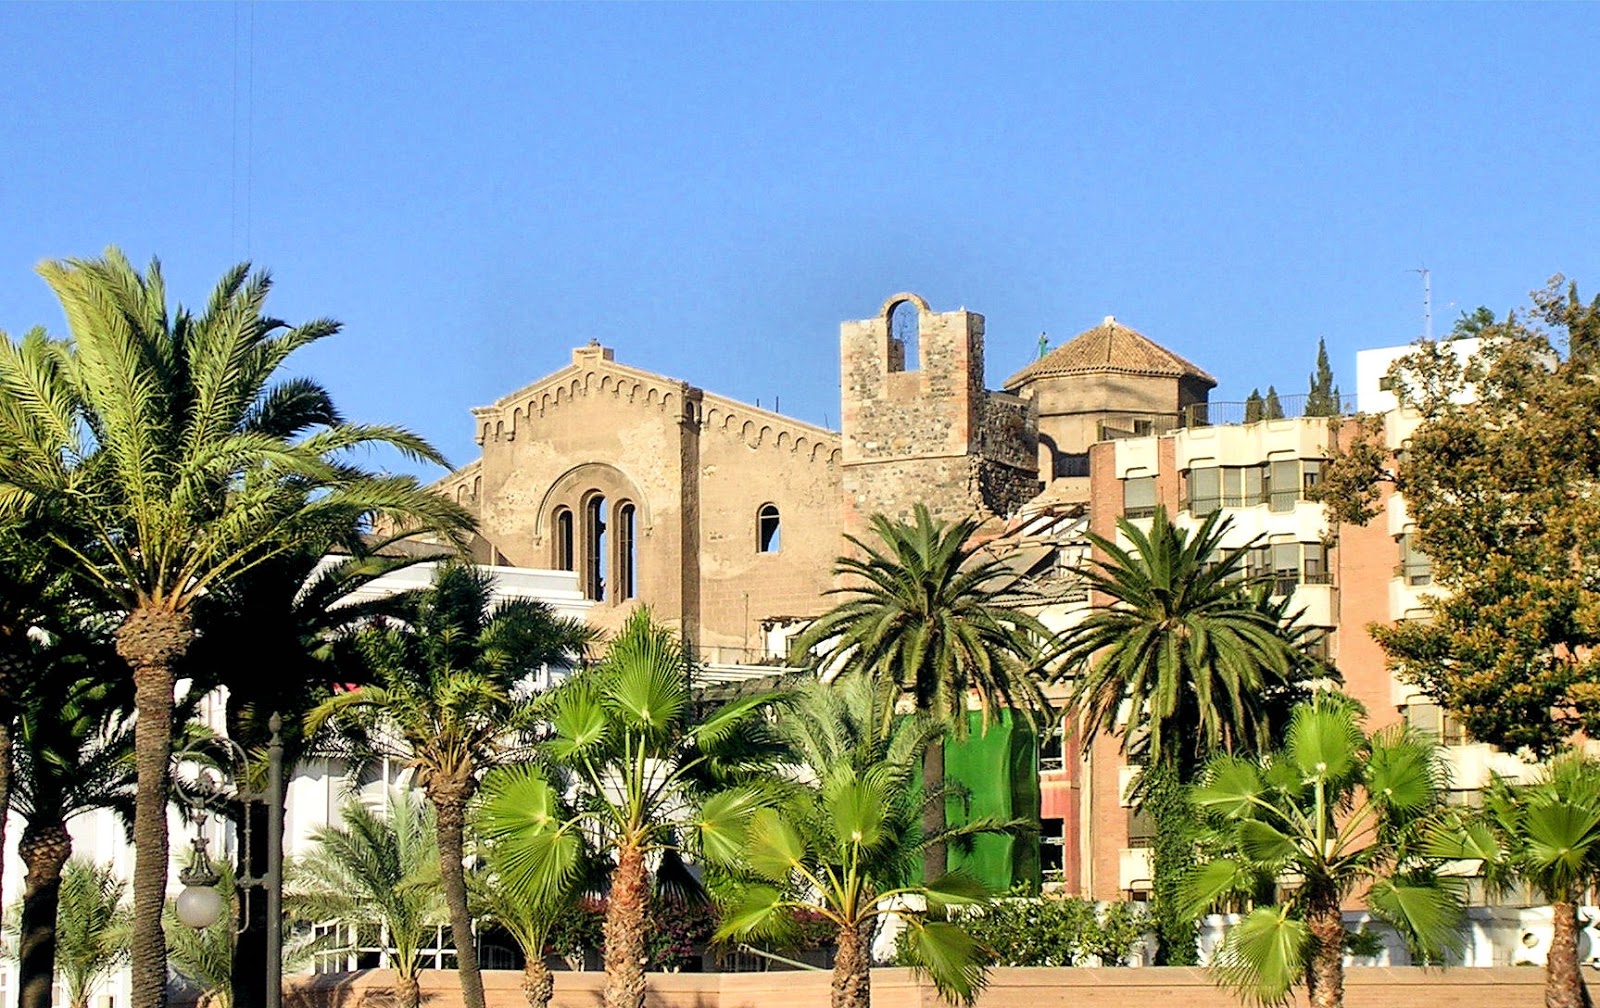 The 13th-century cathedral of Santa María la Vieja. Photo: Ventimiglia, WikiMedia.org.